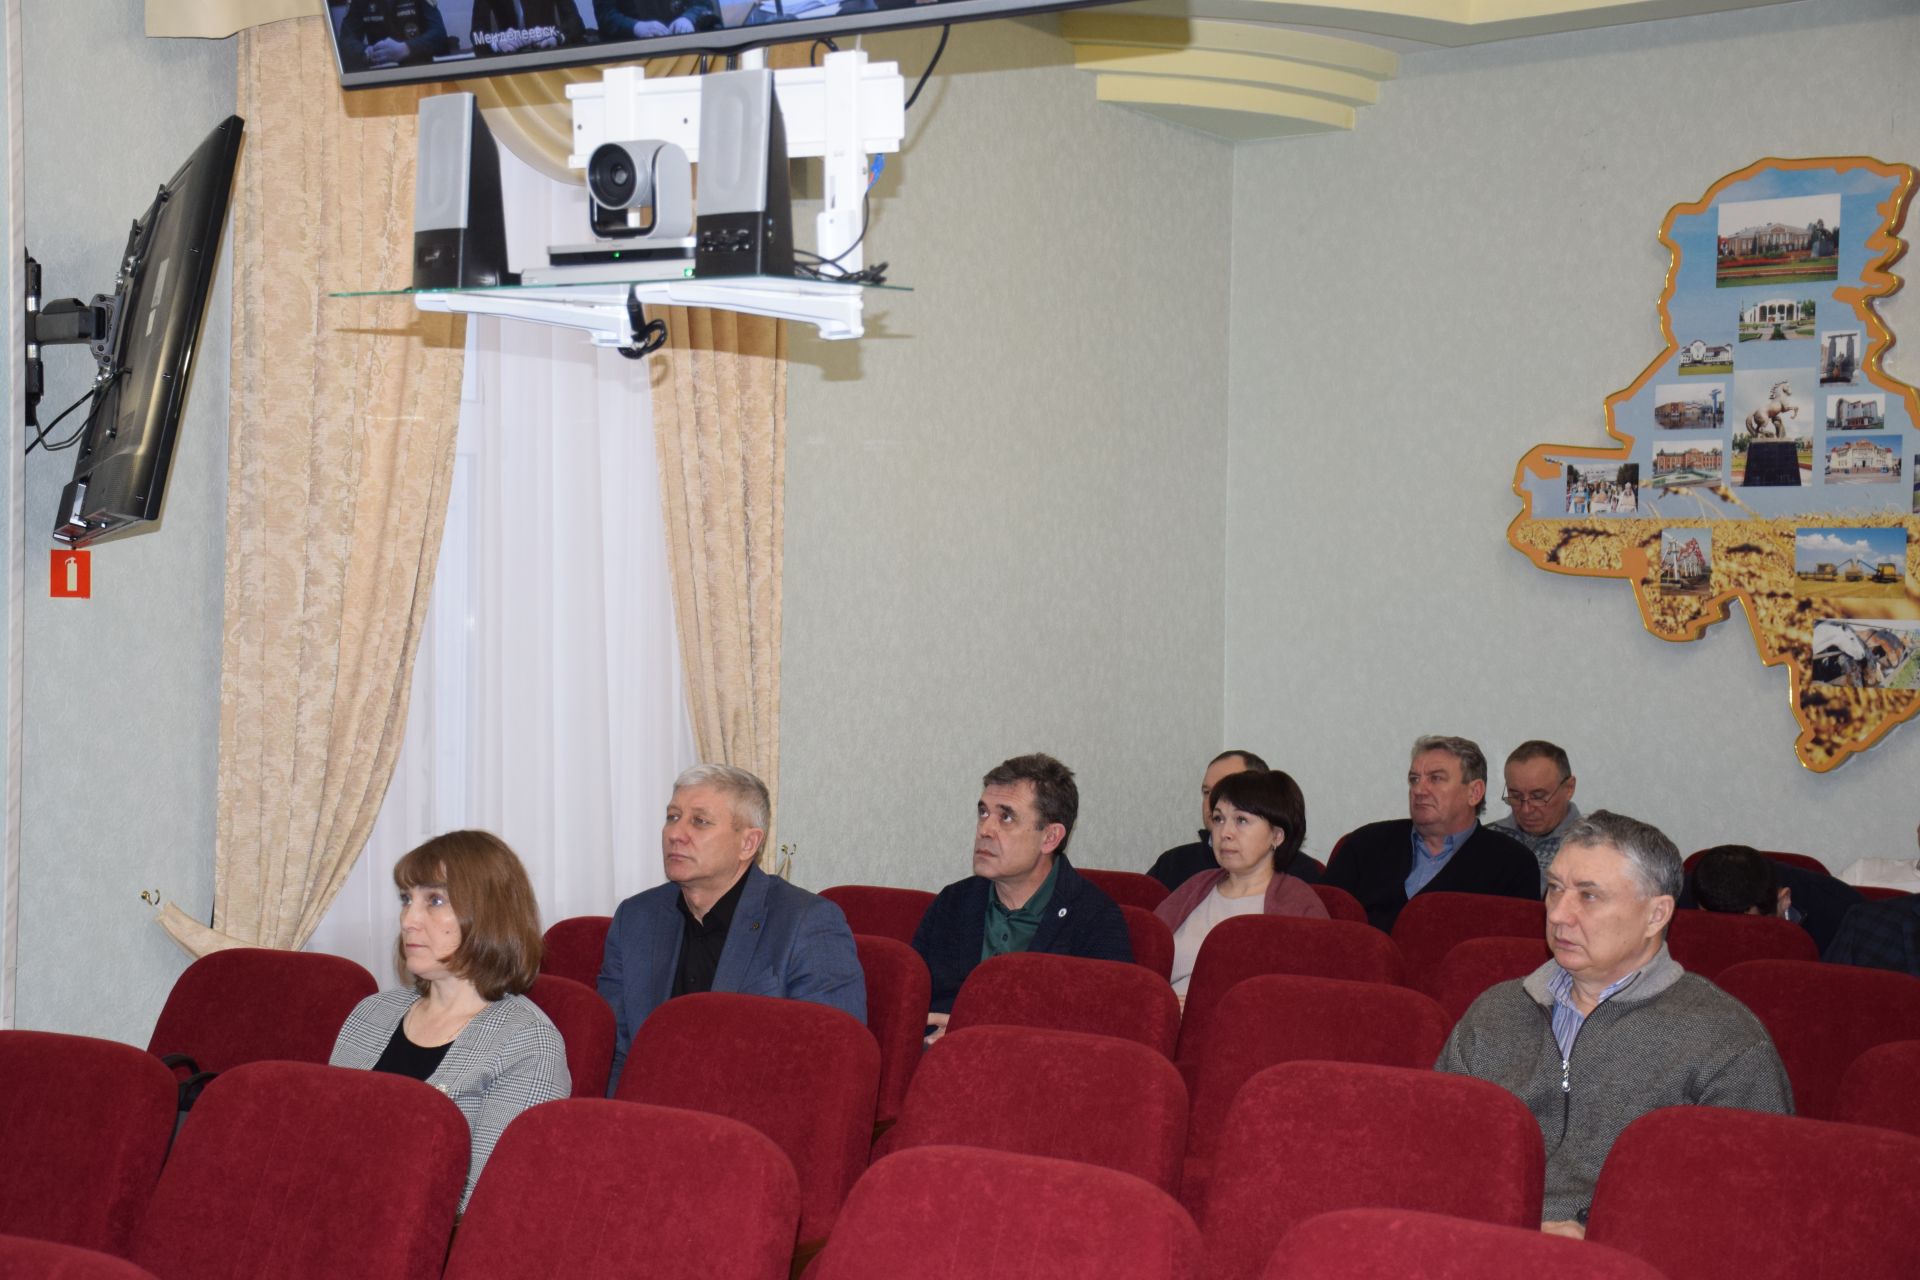 Нурлатцы приняли участие в работе заседания КЧС